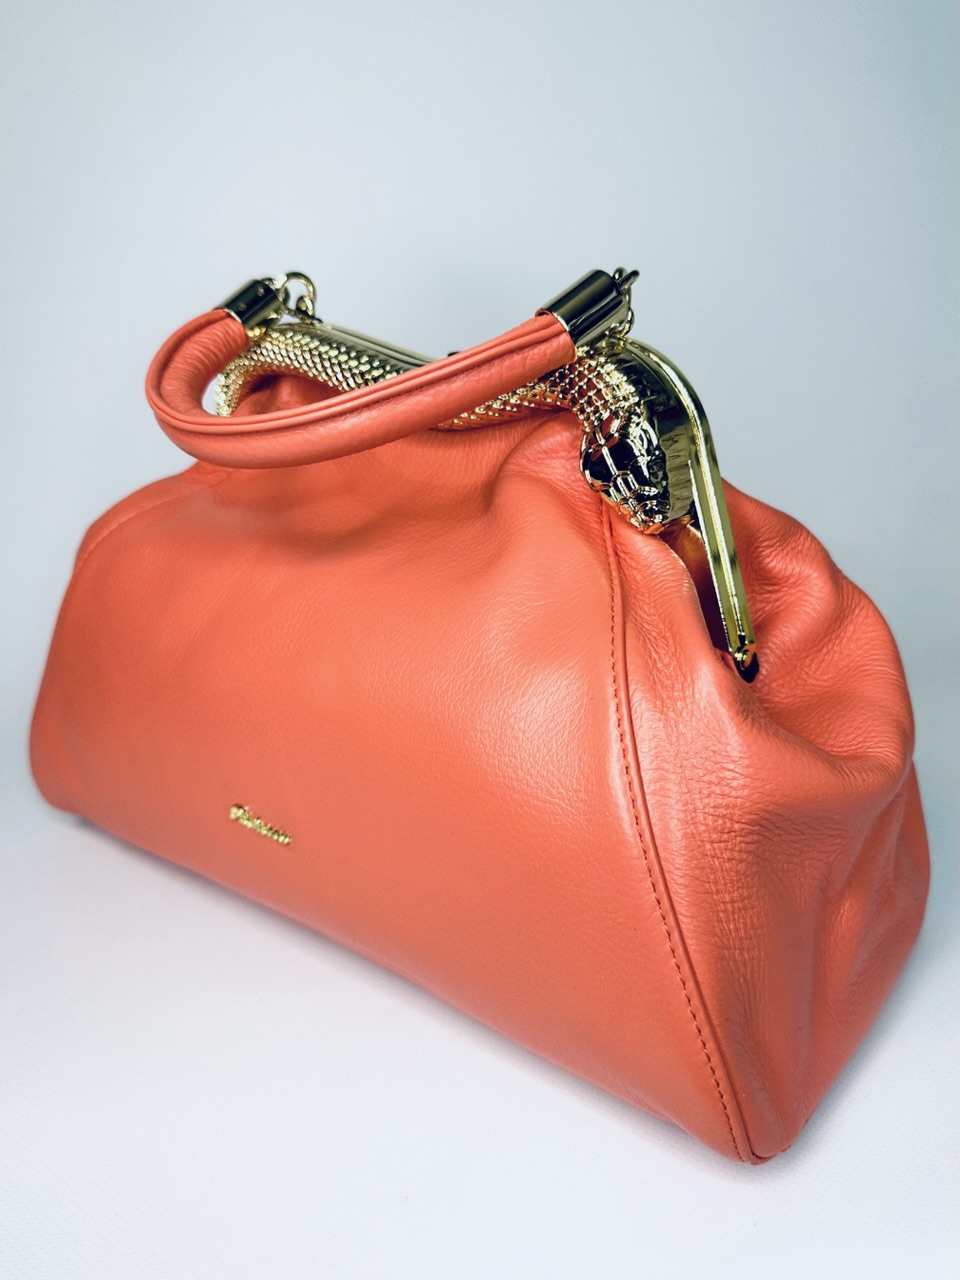 Женская кожаная сумка саквояж на плечо красивого кораллового цвета с золотым фермуаром в виде змеи